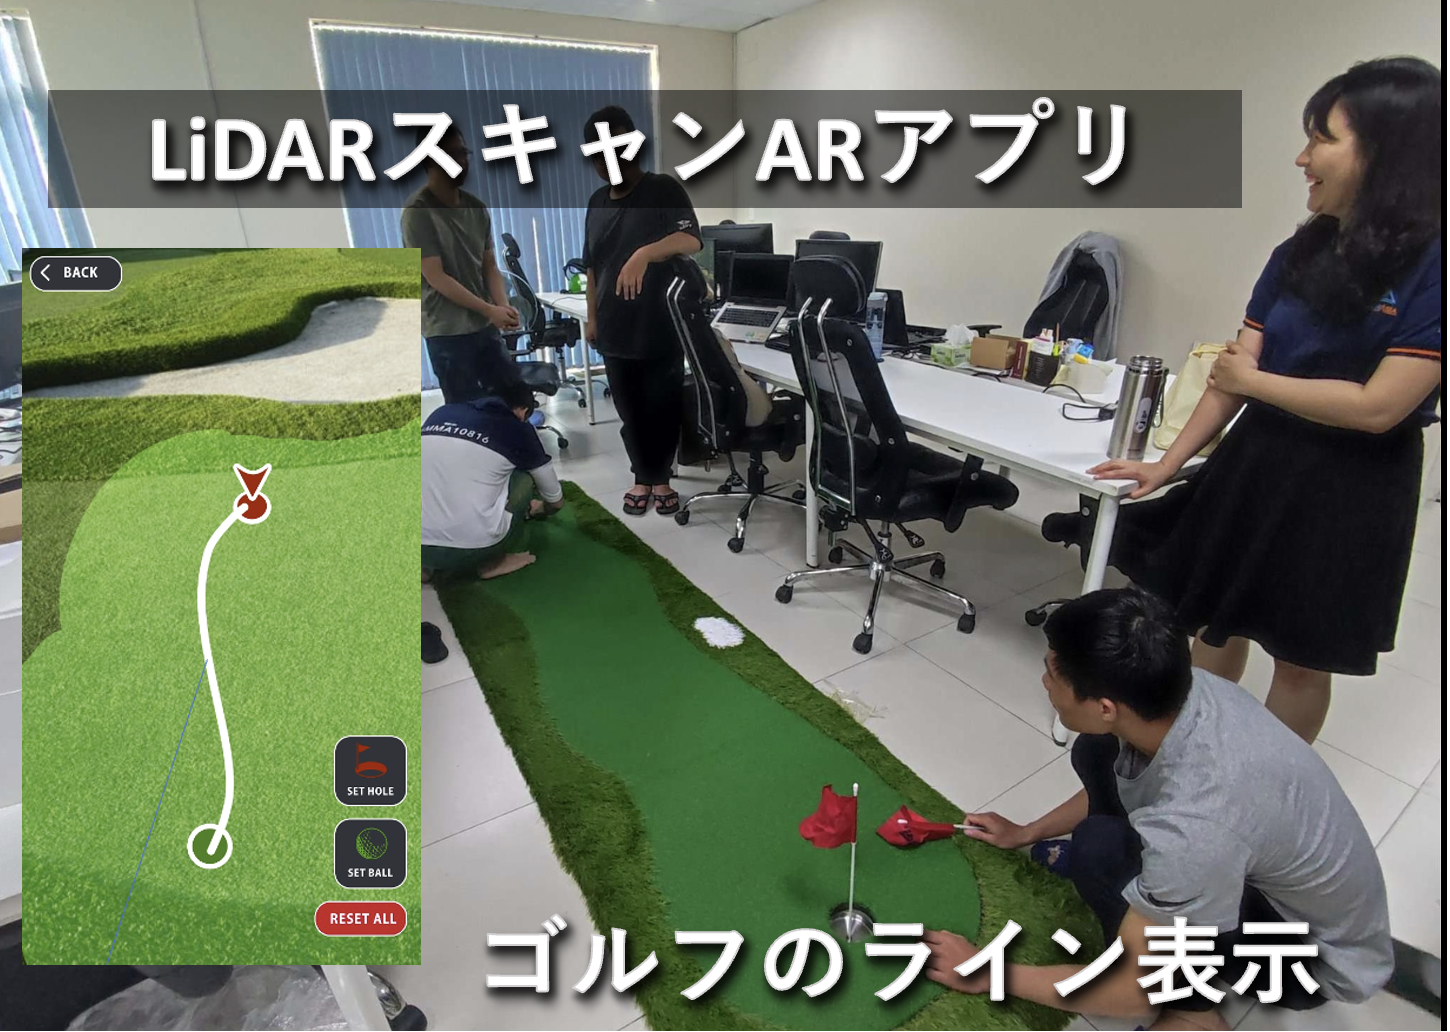 iPhoneの LiDARスキャンでゴルフのラインを表示するARアプリの研究開発